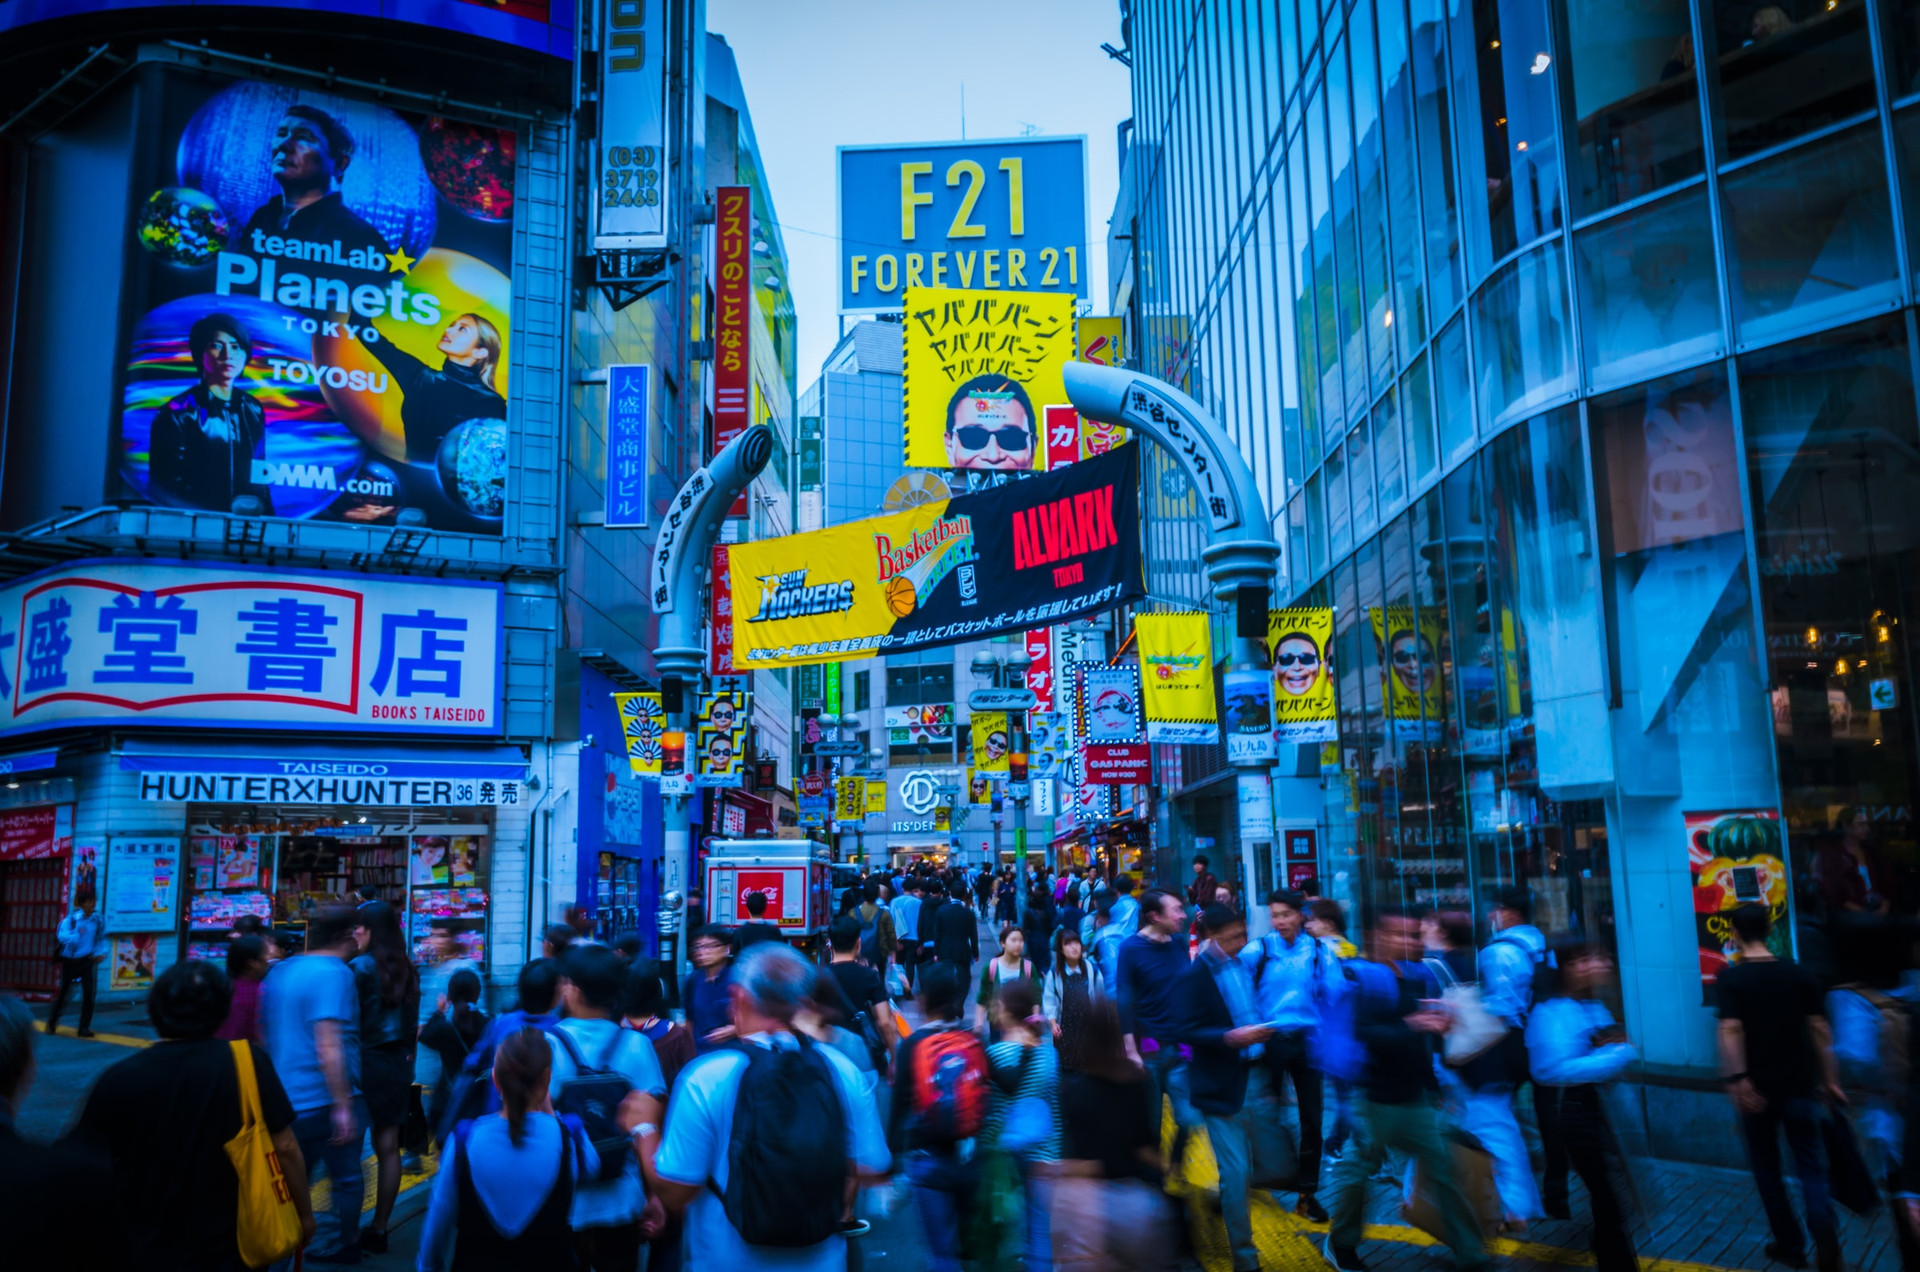 Con đường Shibuya nổi tiếng chật kín người đi lại ở thủ đô Tokyo. Ảnh: Unsplash.